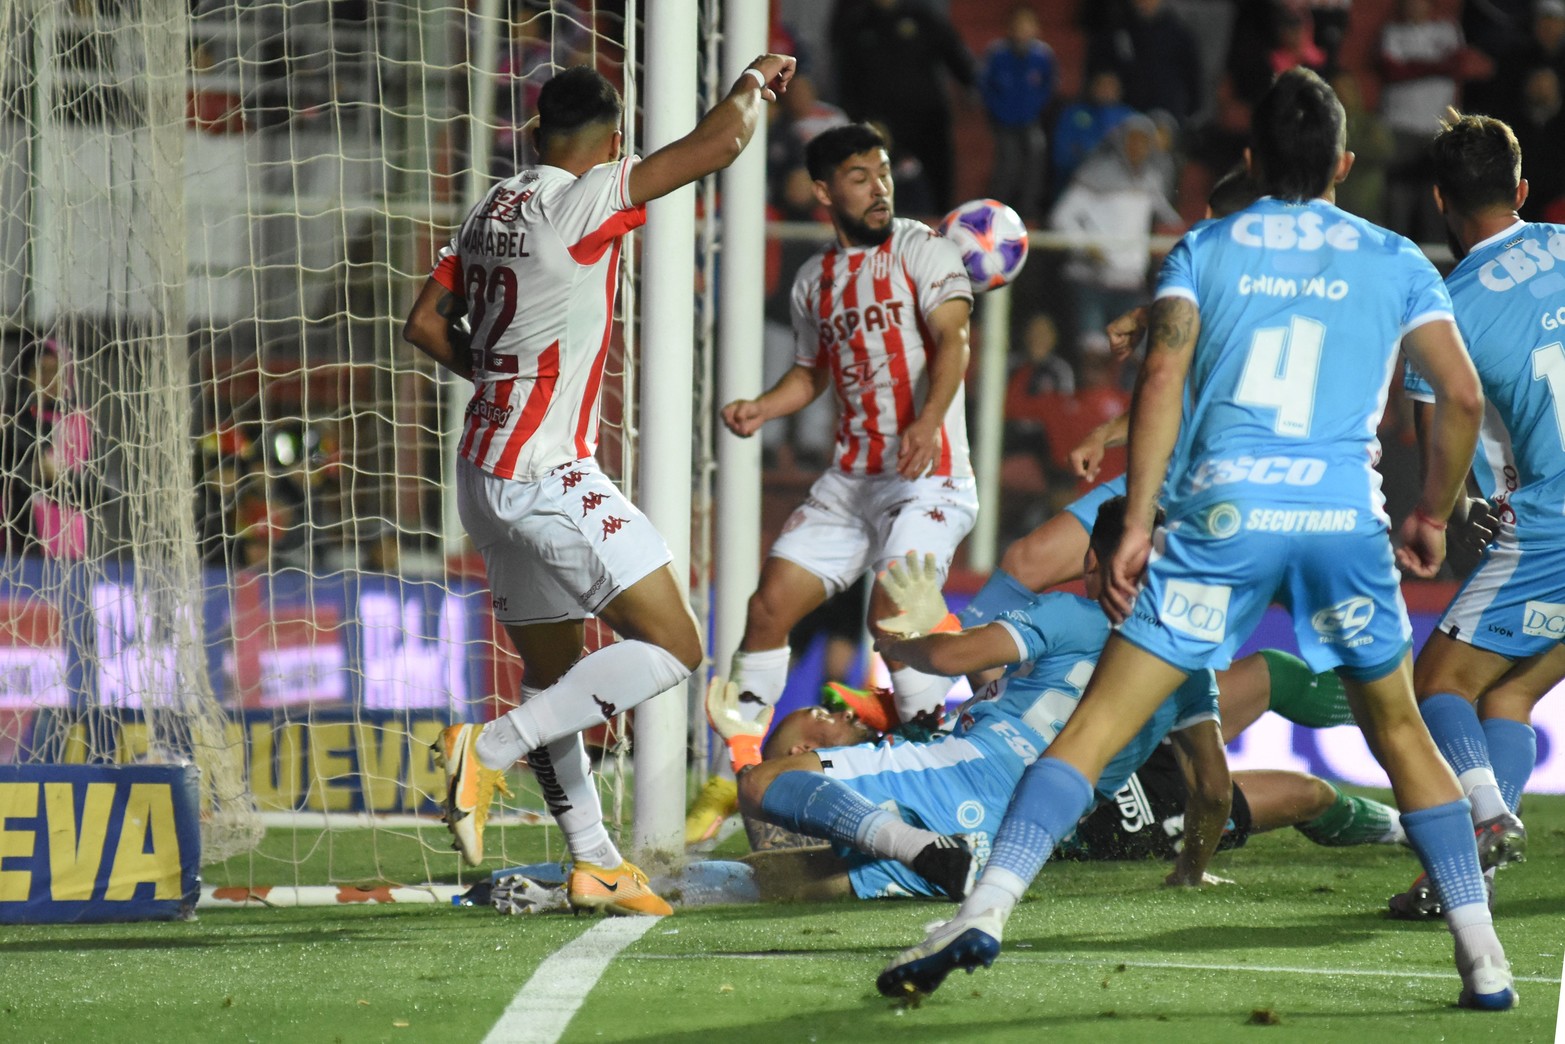 La escena de la jugada del gol. Foto Mauricio Garín